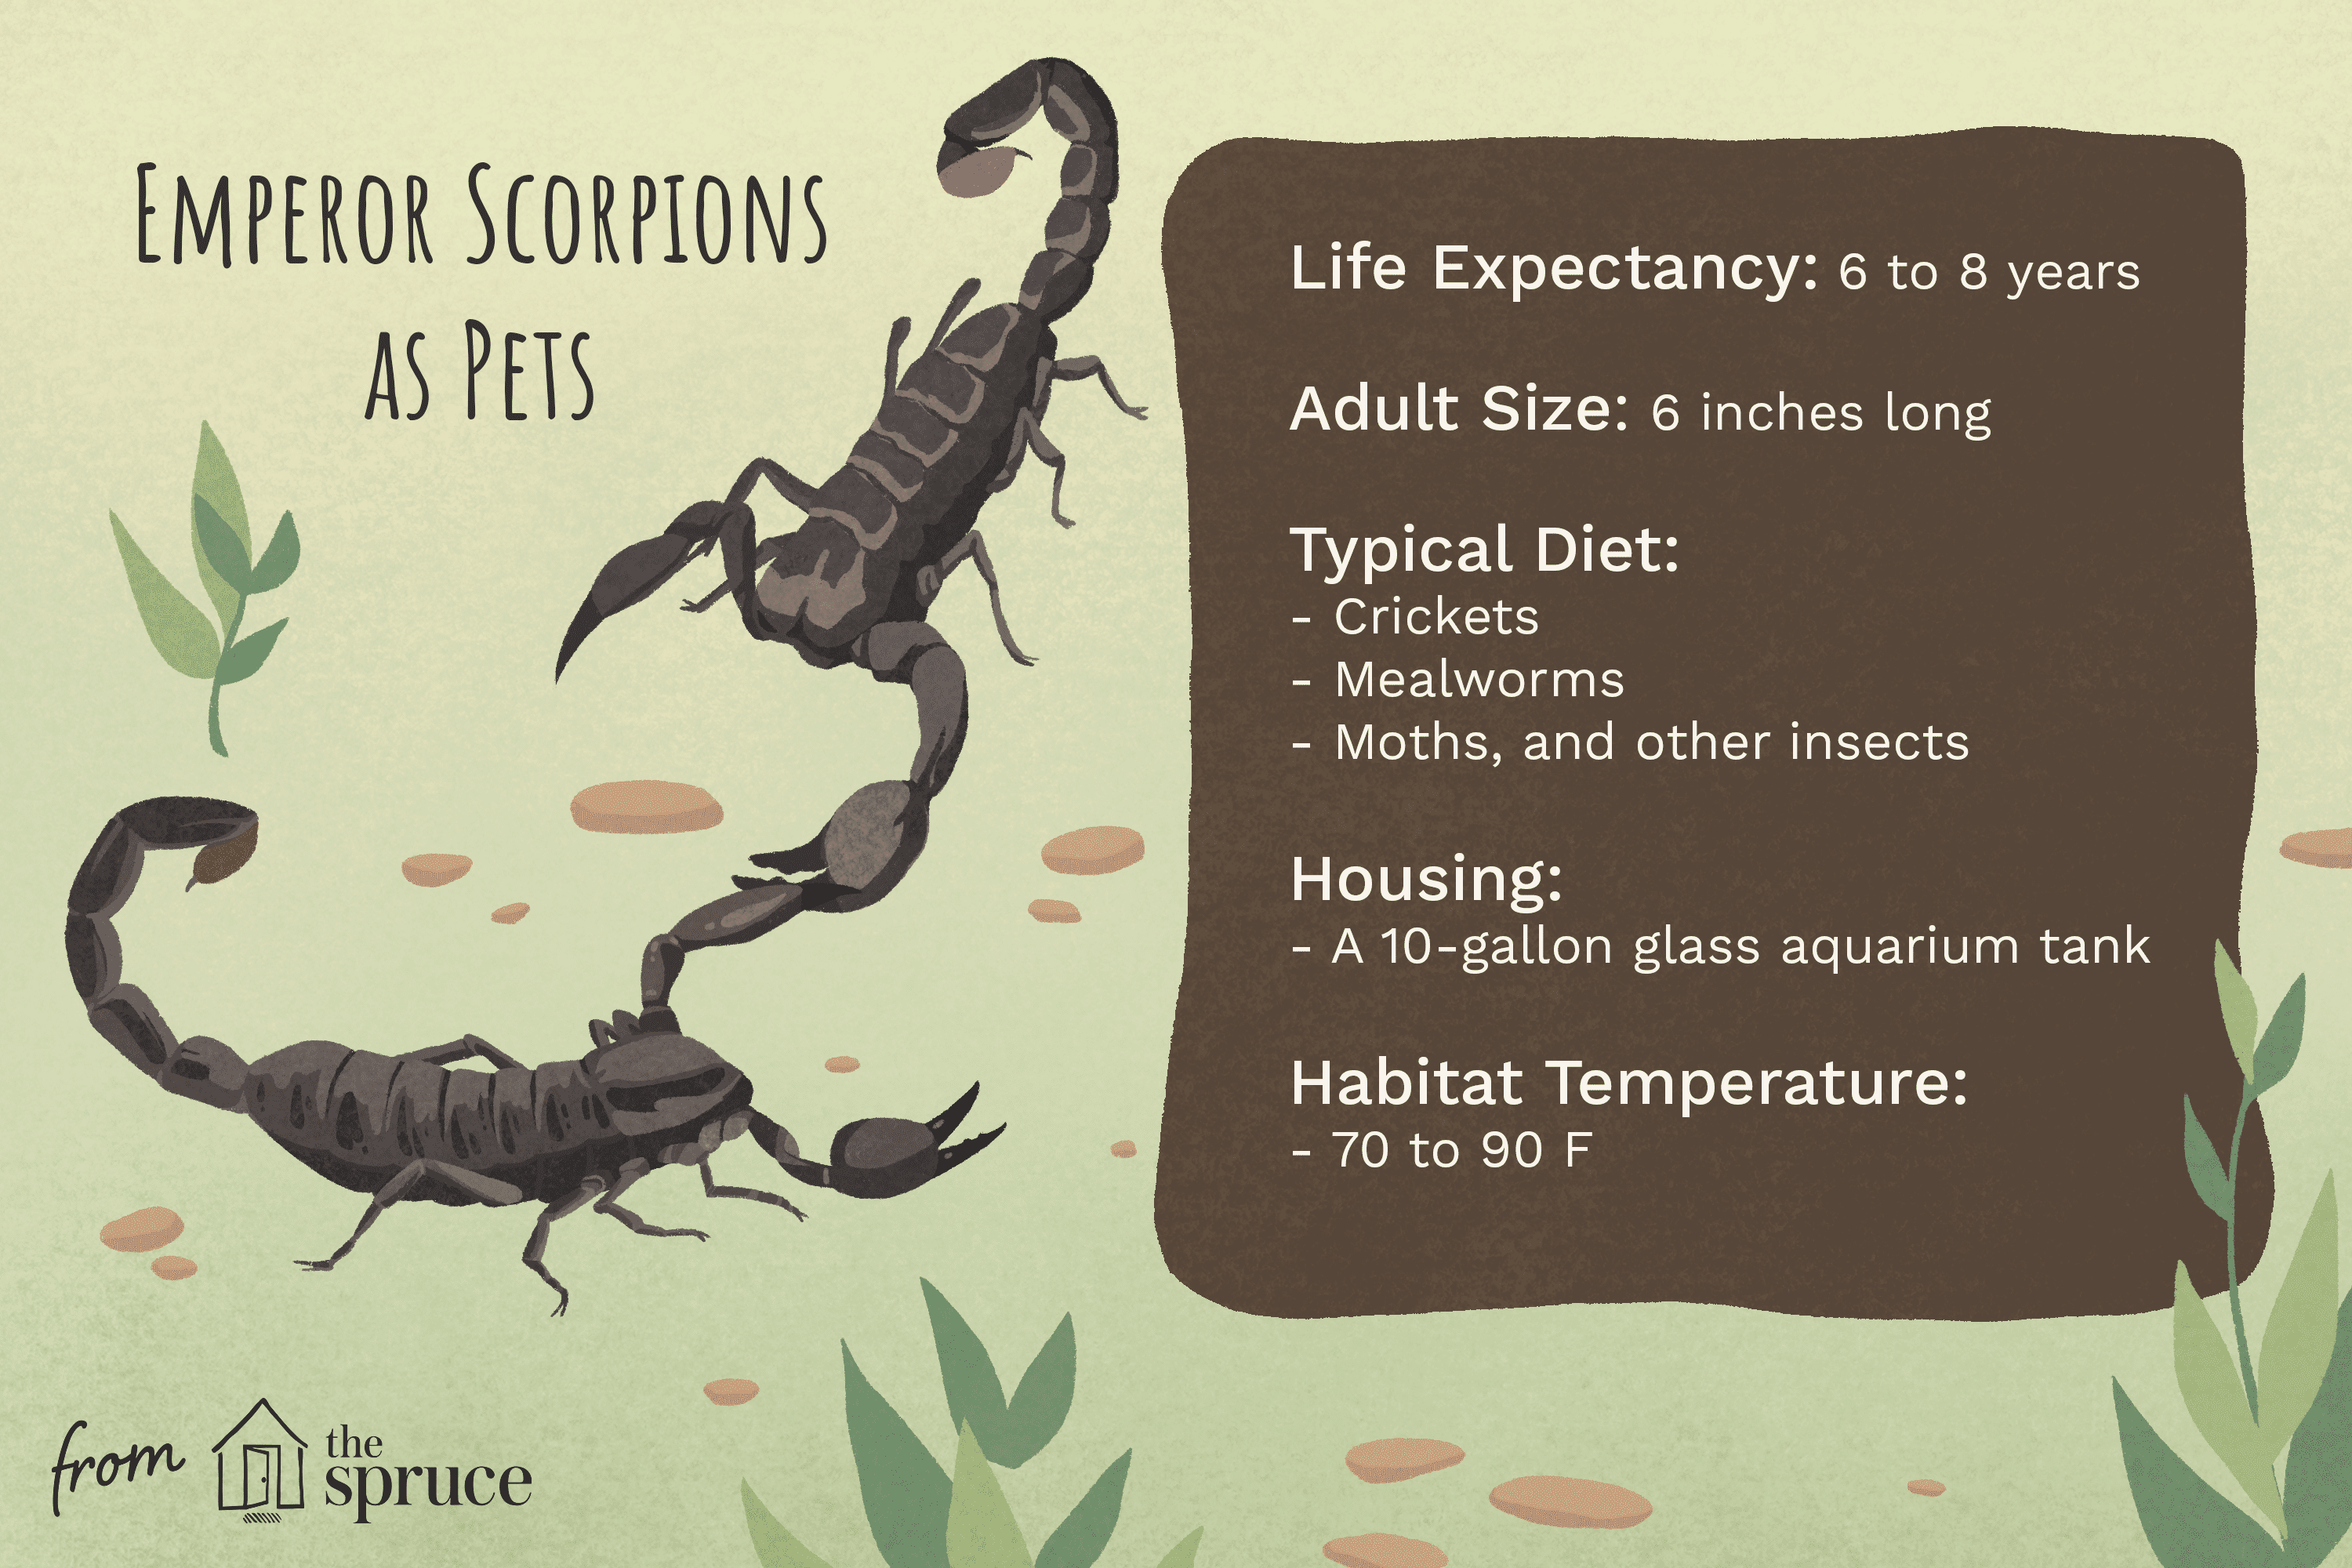 Měli byste si nechat císařského škorpiona jako mazlíčka?